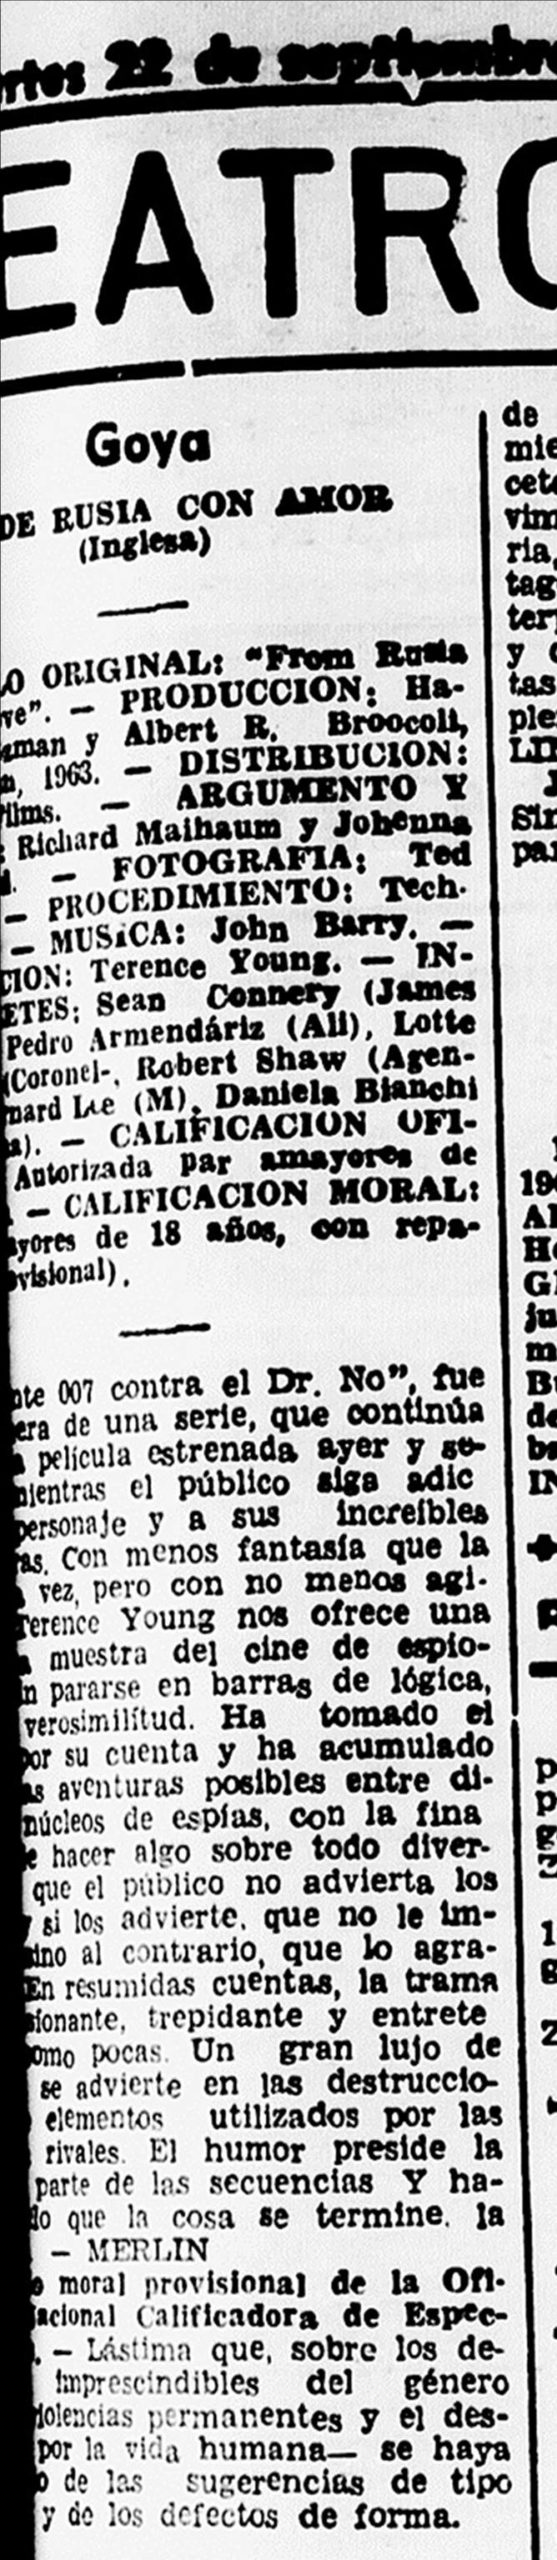 02 1964 09 22 El Noticiero Zaragoza 19 Critica scaled